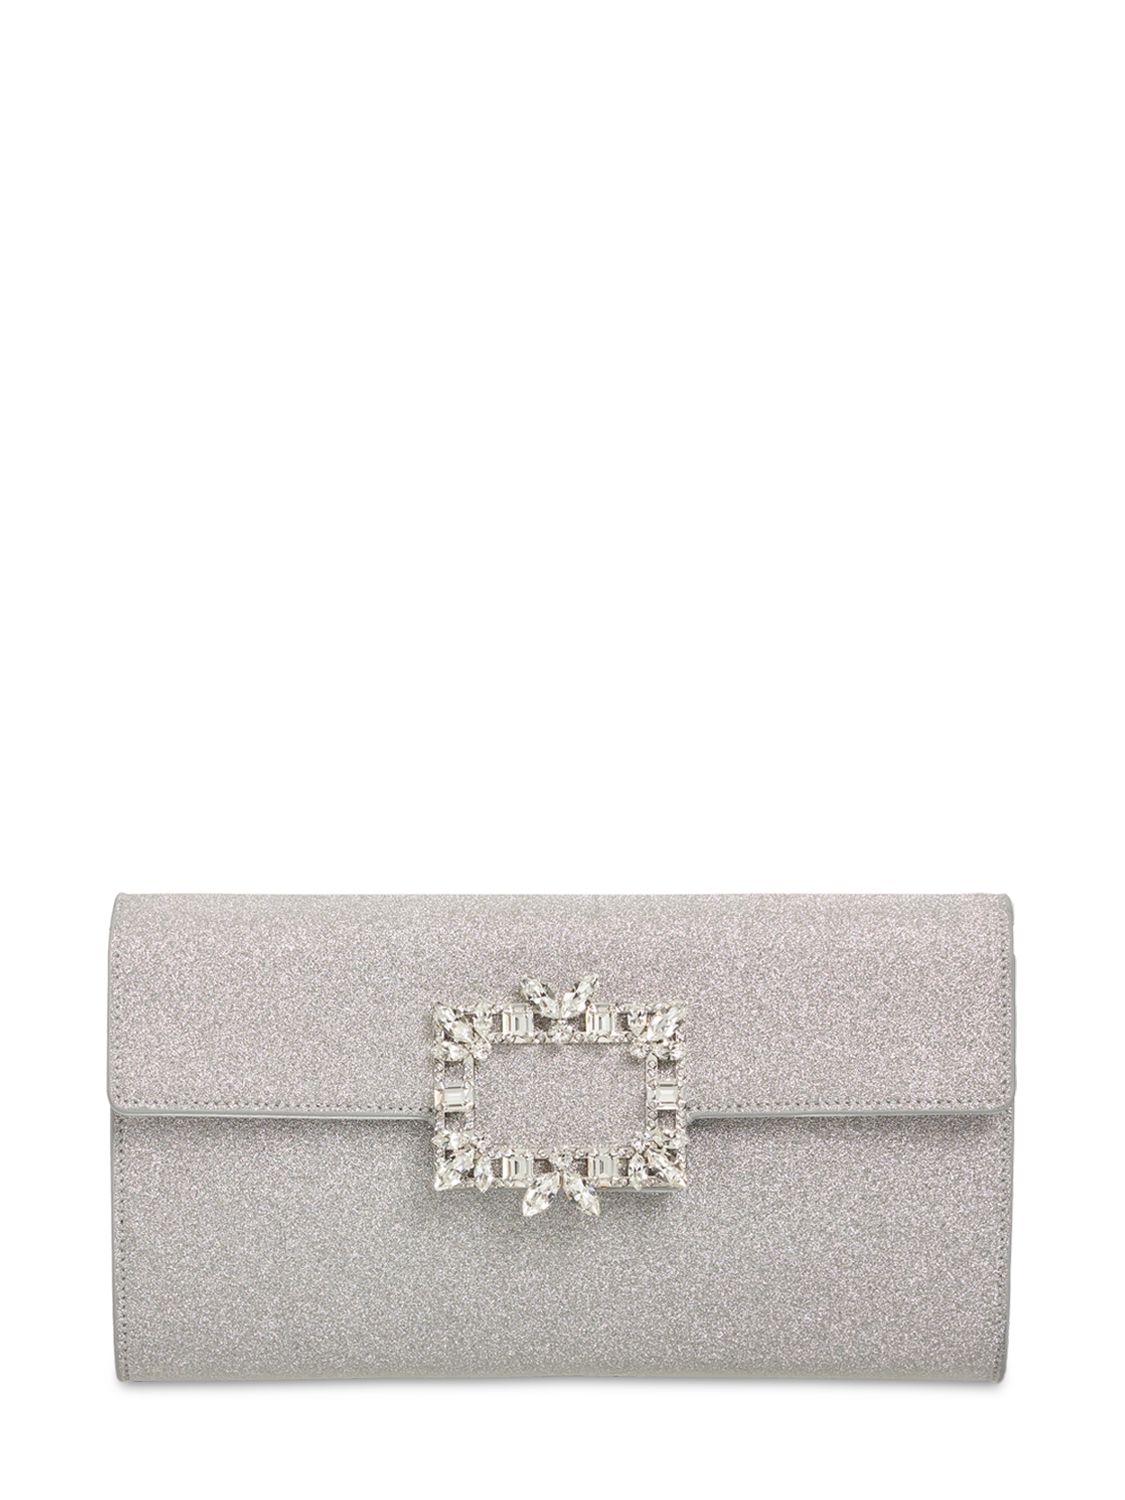 Roger Vivier Crystal Buckle Sparkle Envelope Clutch In Silver